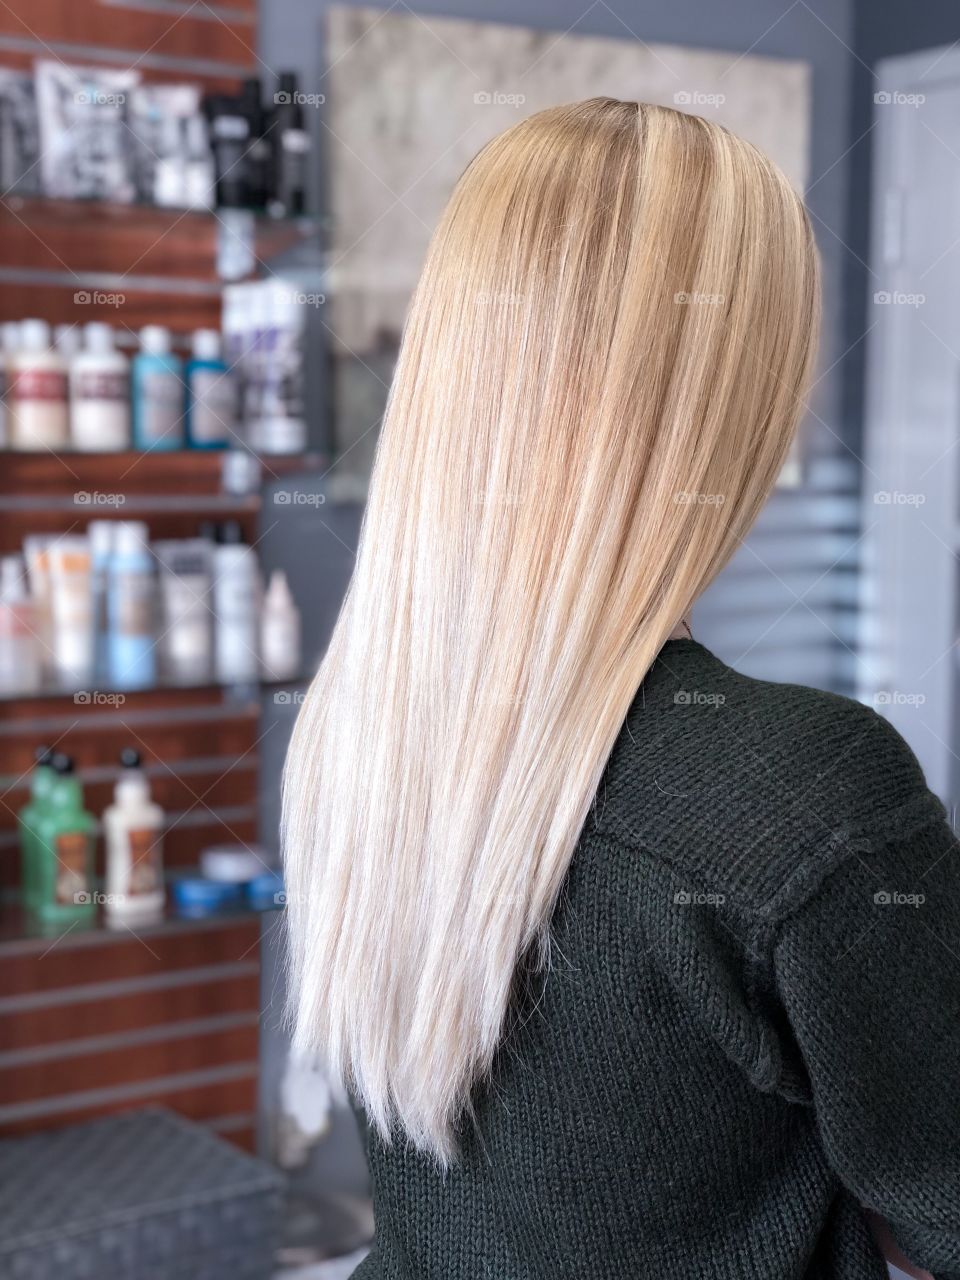 Blonde balayage on long hair